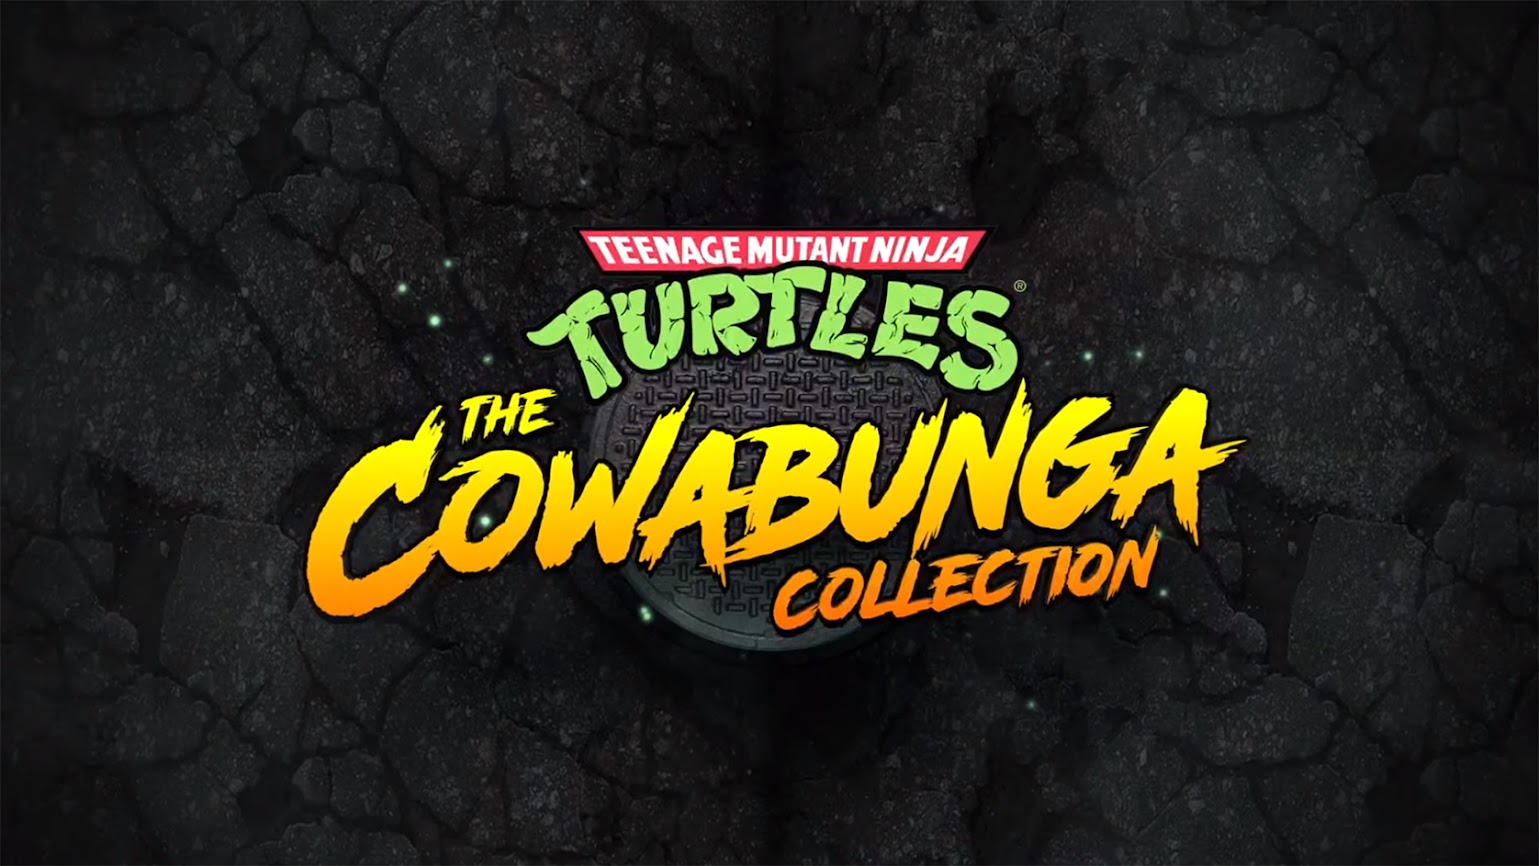 Cowabunga Collection The Teenage Ninja Mutant Turtles: Revealed